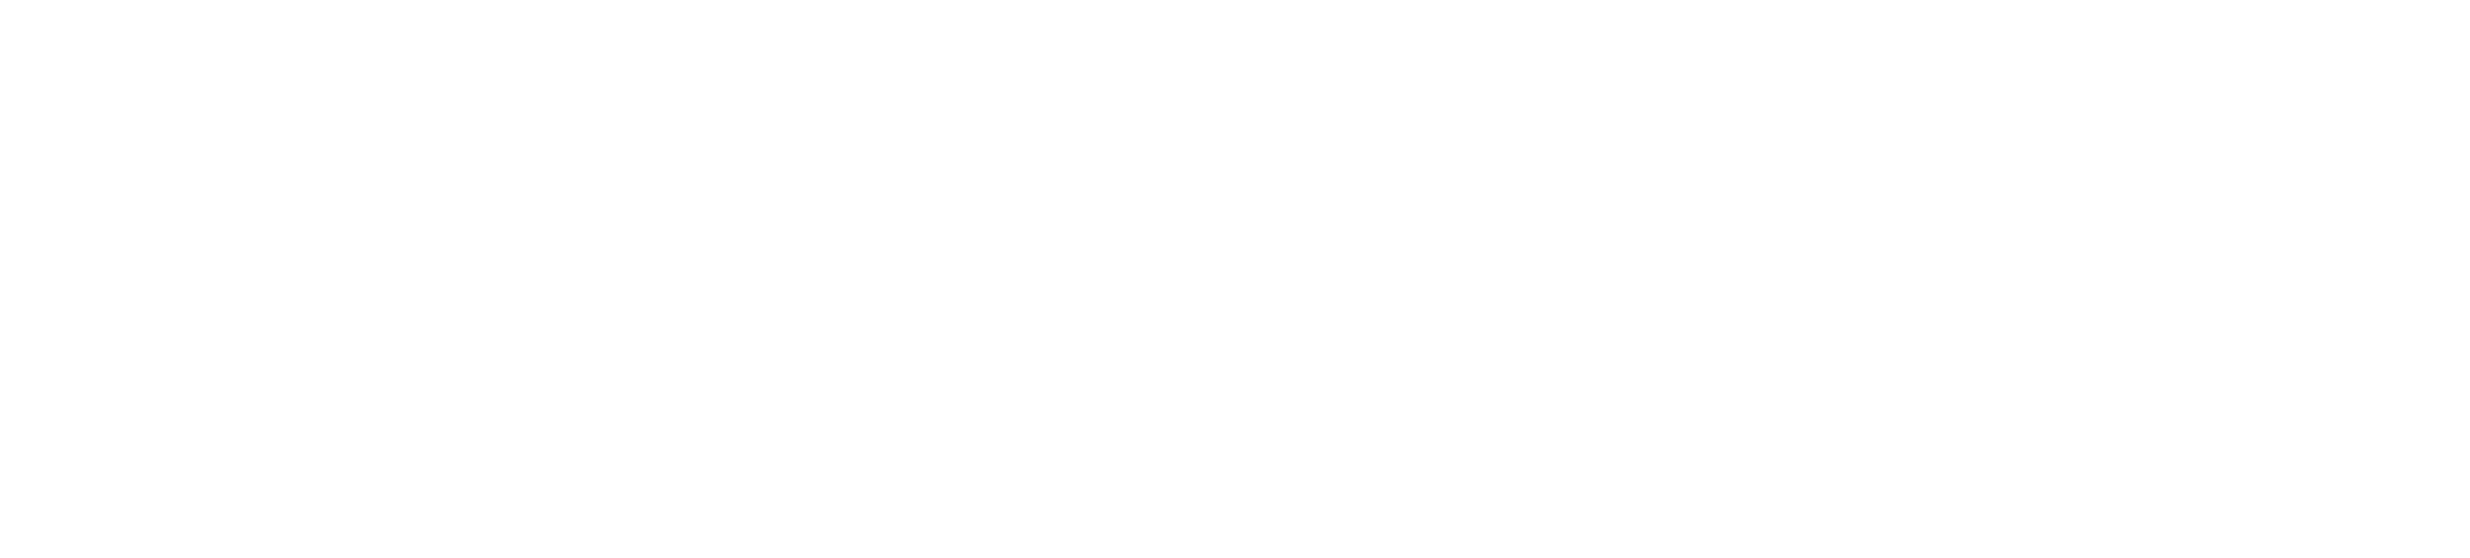 VGCT - VIETNAM GENE CELL TECHNOLOGY